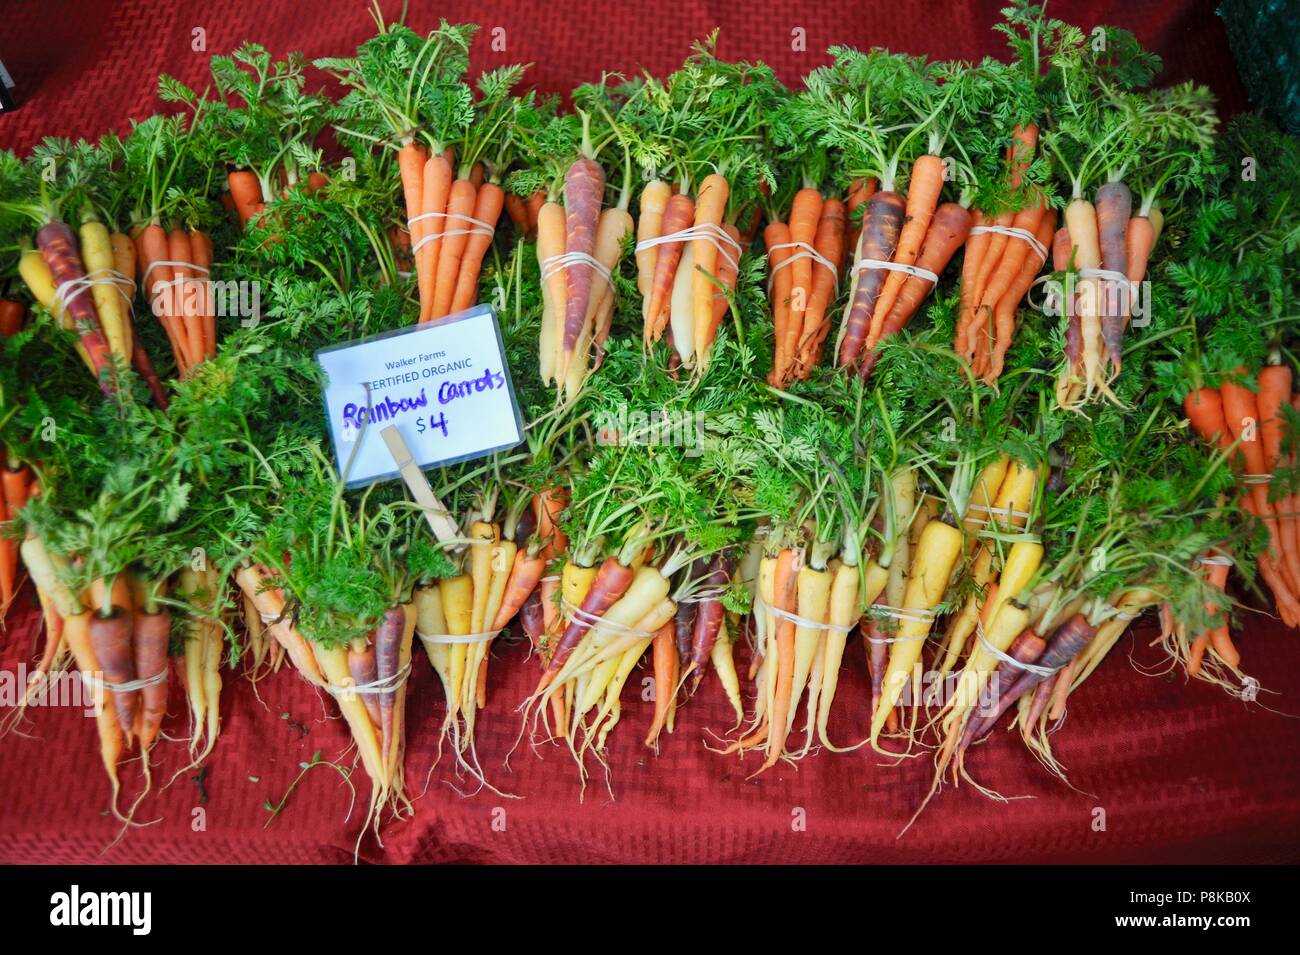 Tidy bottes de carottes arc-en-ciel multicolores) (à la Walker de fermes farmstand pour vendre au marché de fermiers dans la région de Savannah, Georgia, USA Banque D'Images